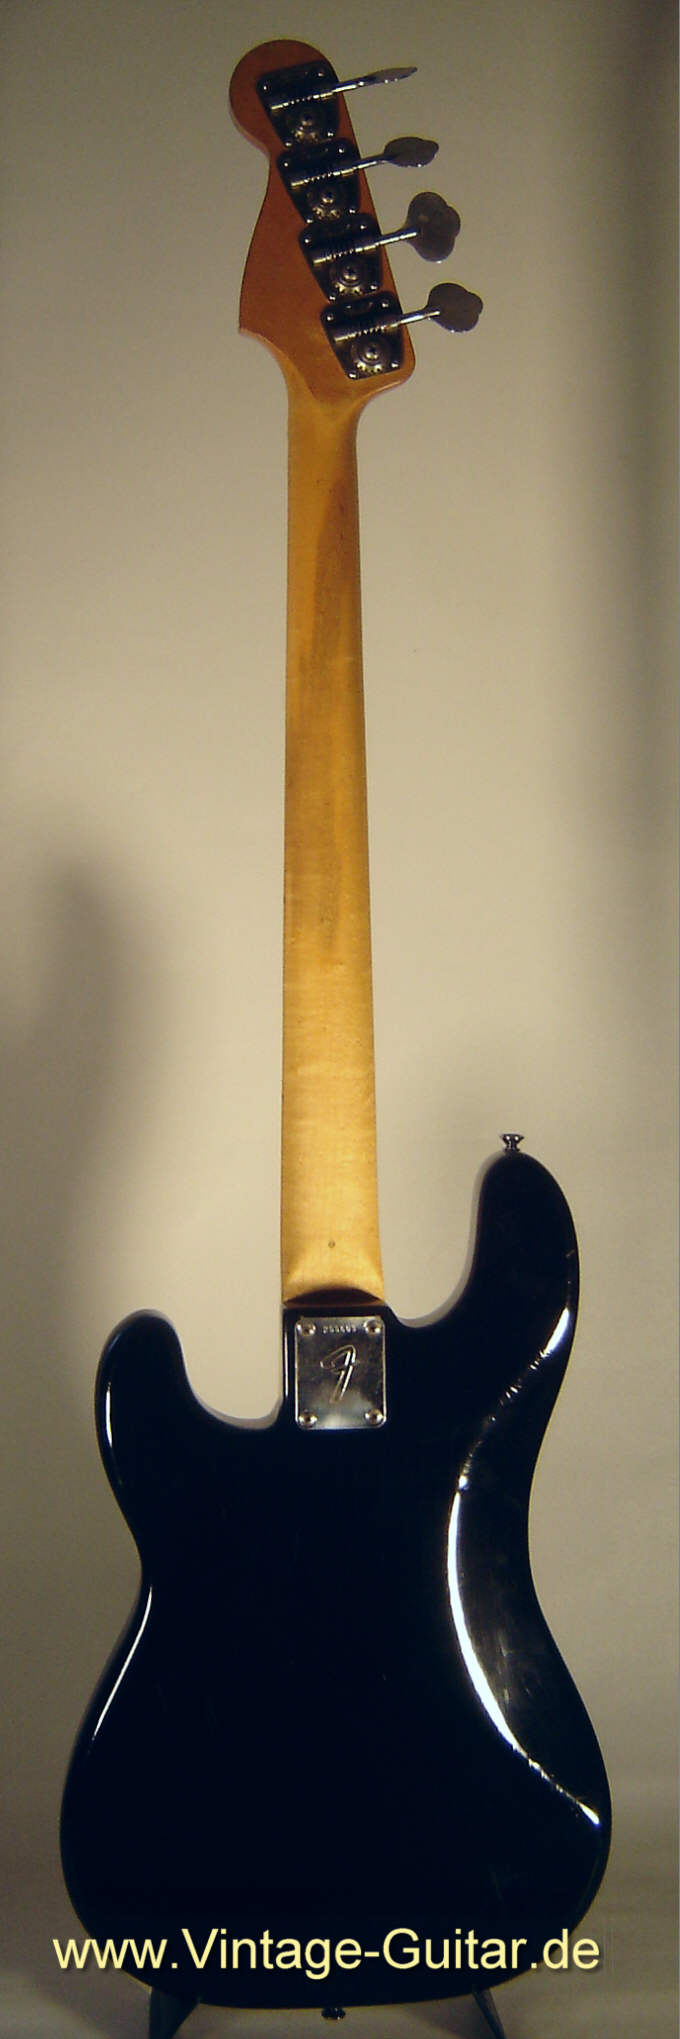 Fender Precision Bass 1969 black back.jpg